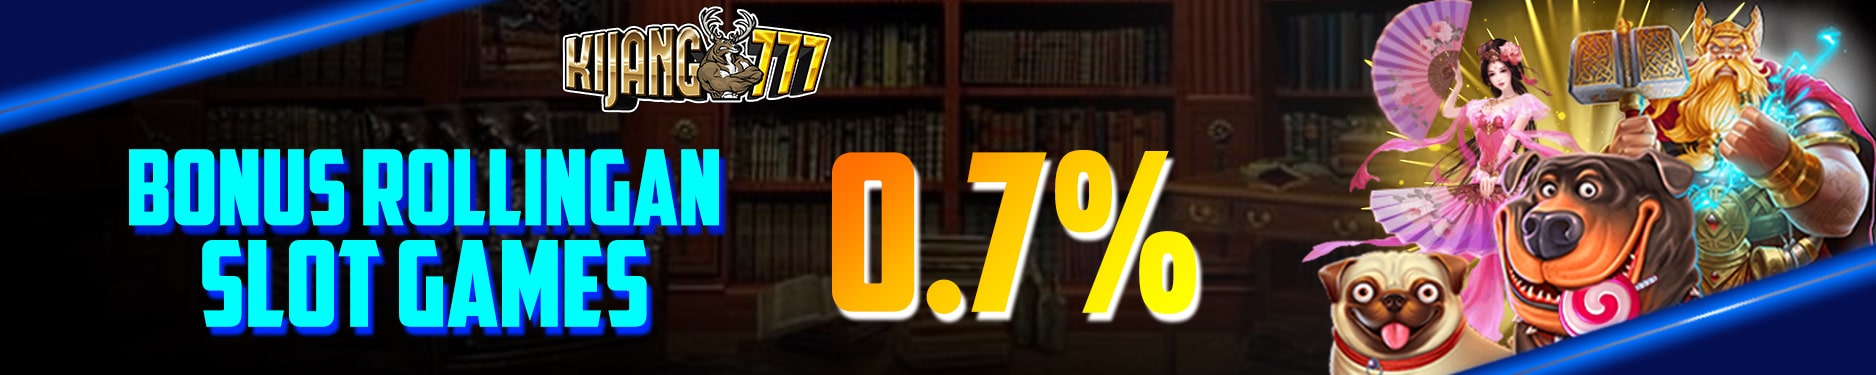 BONUS ROLLINGAN SLOT GAMES 0.7%